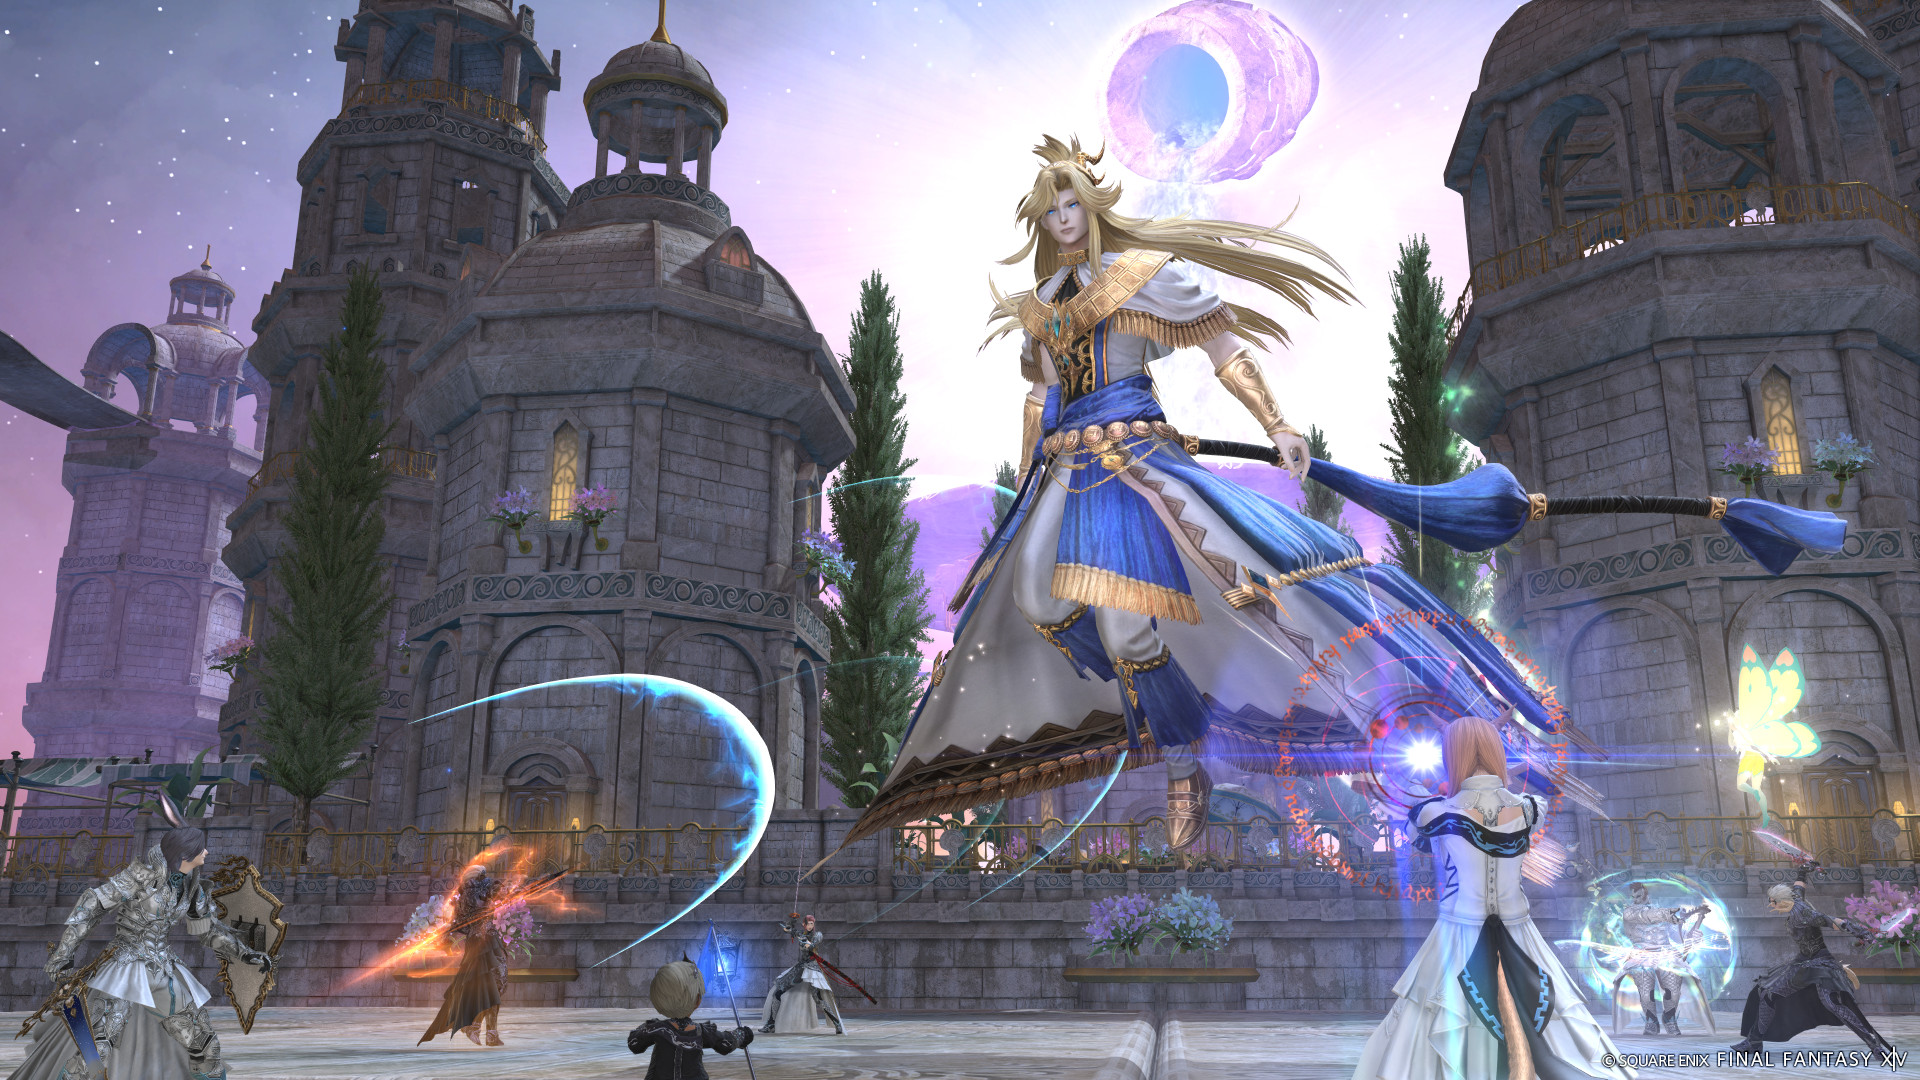 Los jugadores combaten contra una hermosa hechicera flotante en una escena de batalla de Final Fantasy 14